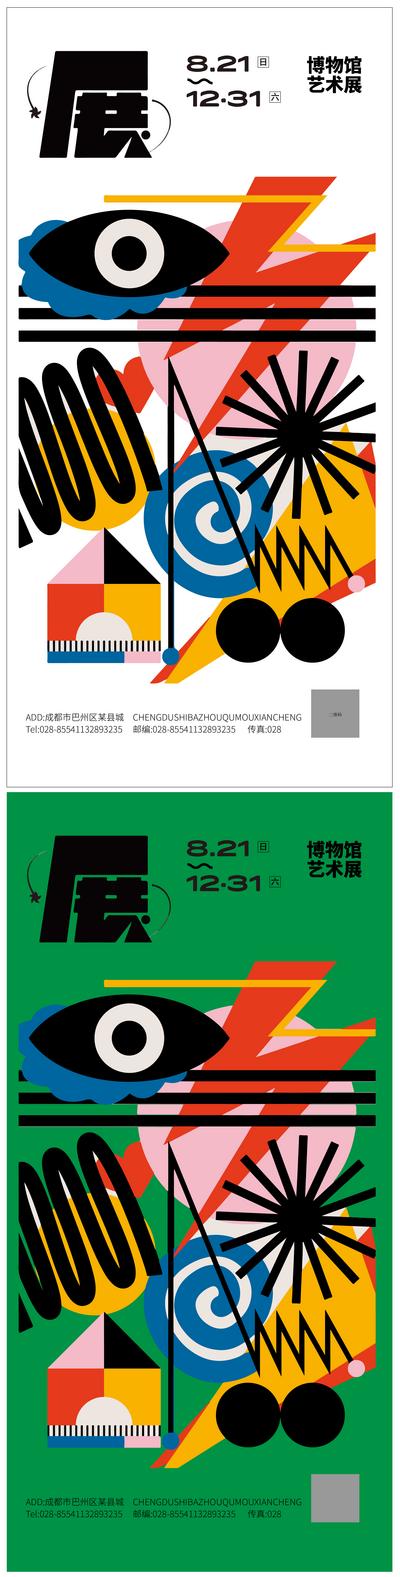 南门网 海报 艺术展 毕业展 展览 抽象 扁平化 色块 拼接